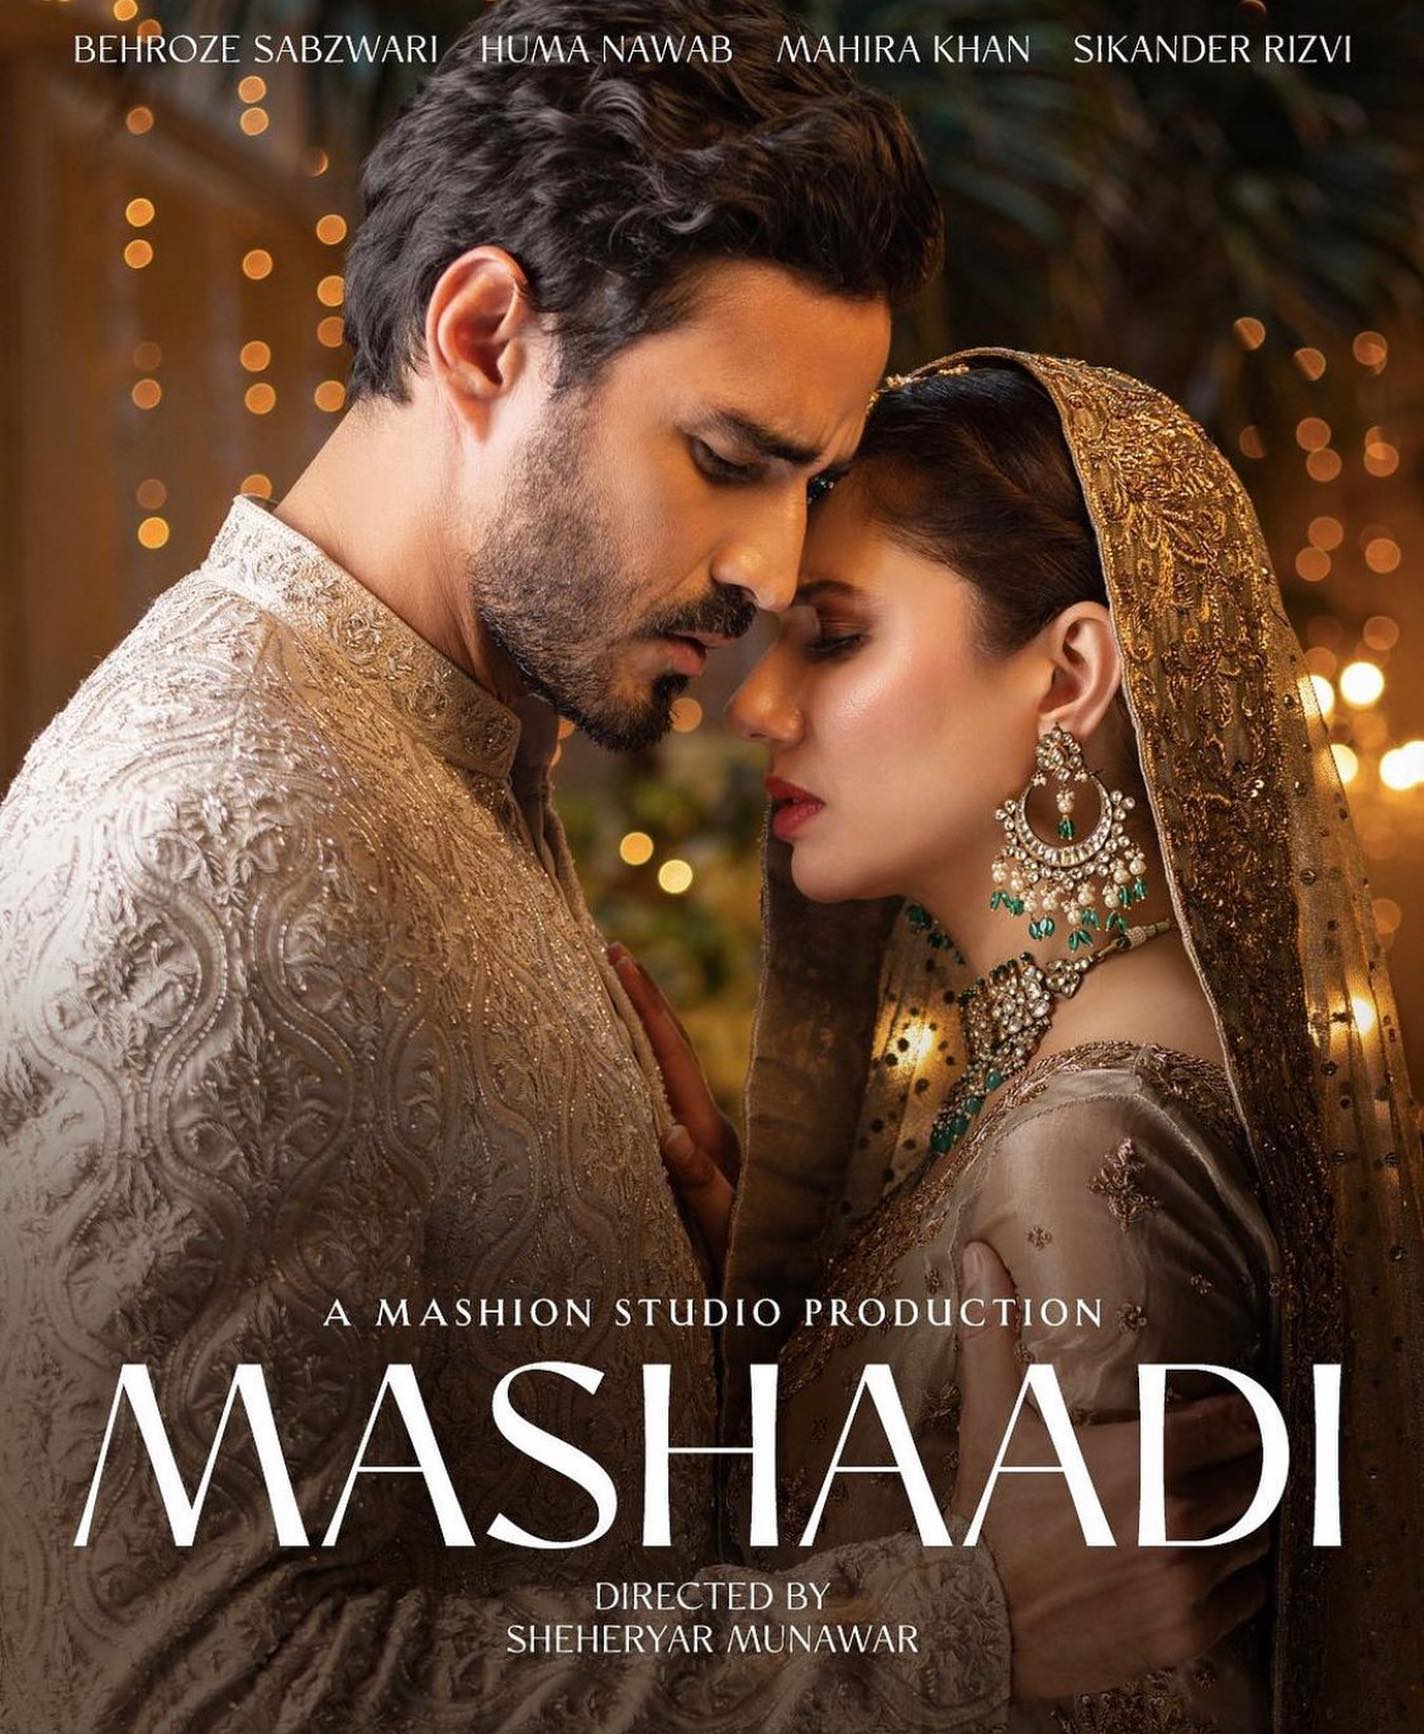 Short Film Mashaadi: घरेलू हिंसा और महिला सशक्तिकरण पर सॉलिड संदेश दे रही है माहिरा खान की शॉर्ट फिल्म मशादी, एक बार ज़रूर देखें